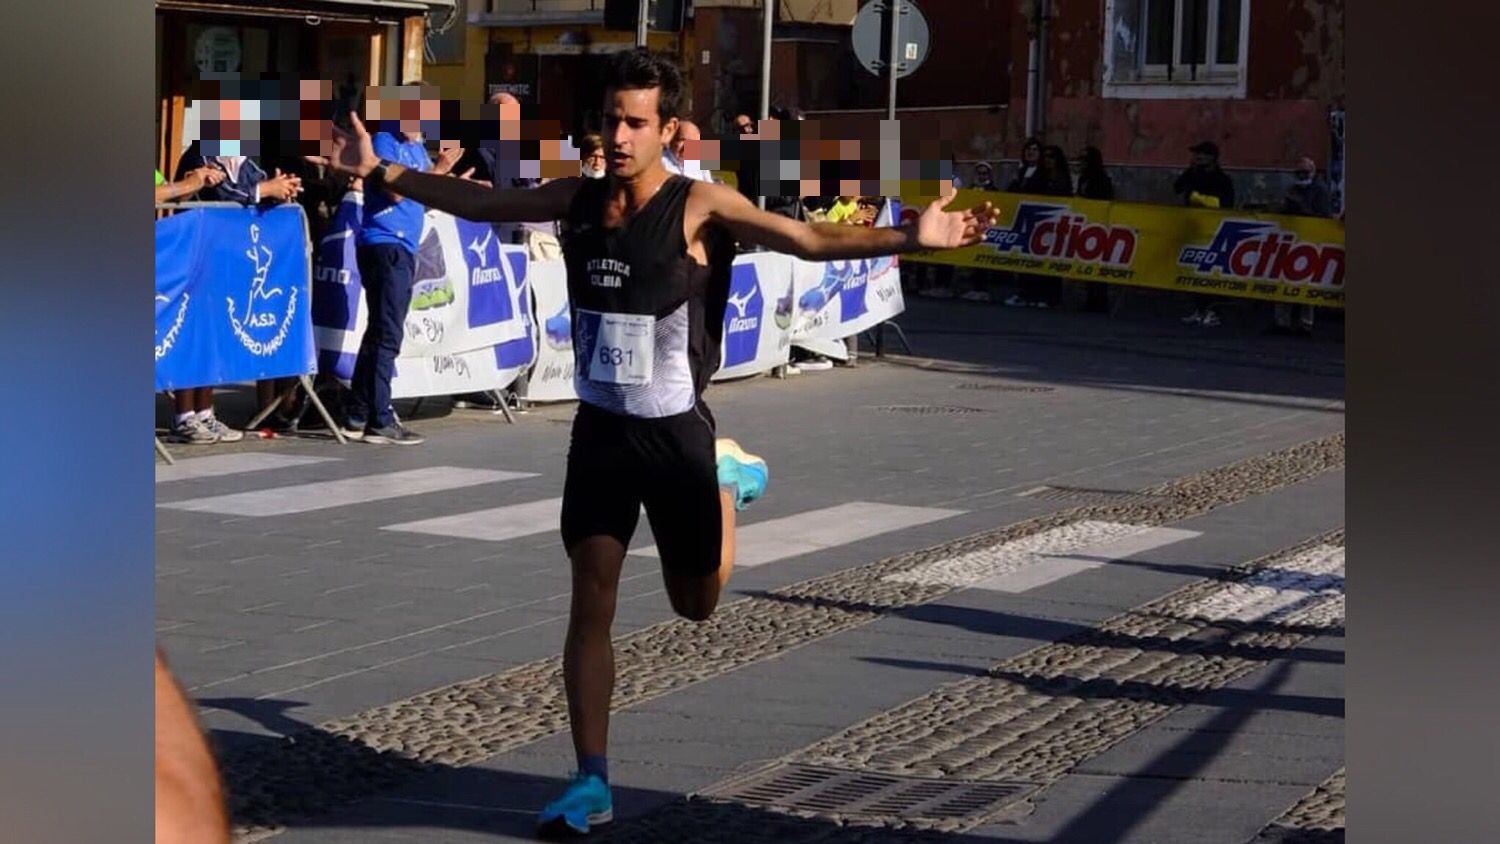 L'olbiese Francesco Mei vince i 10 km ad Alghero